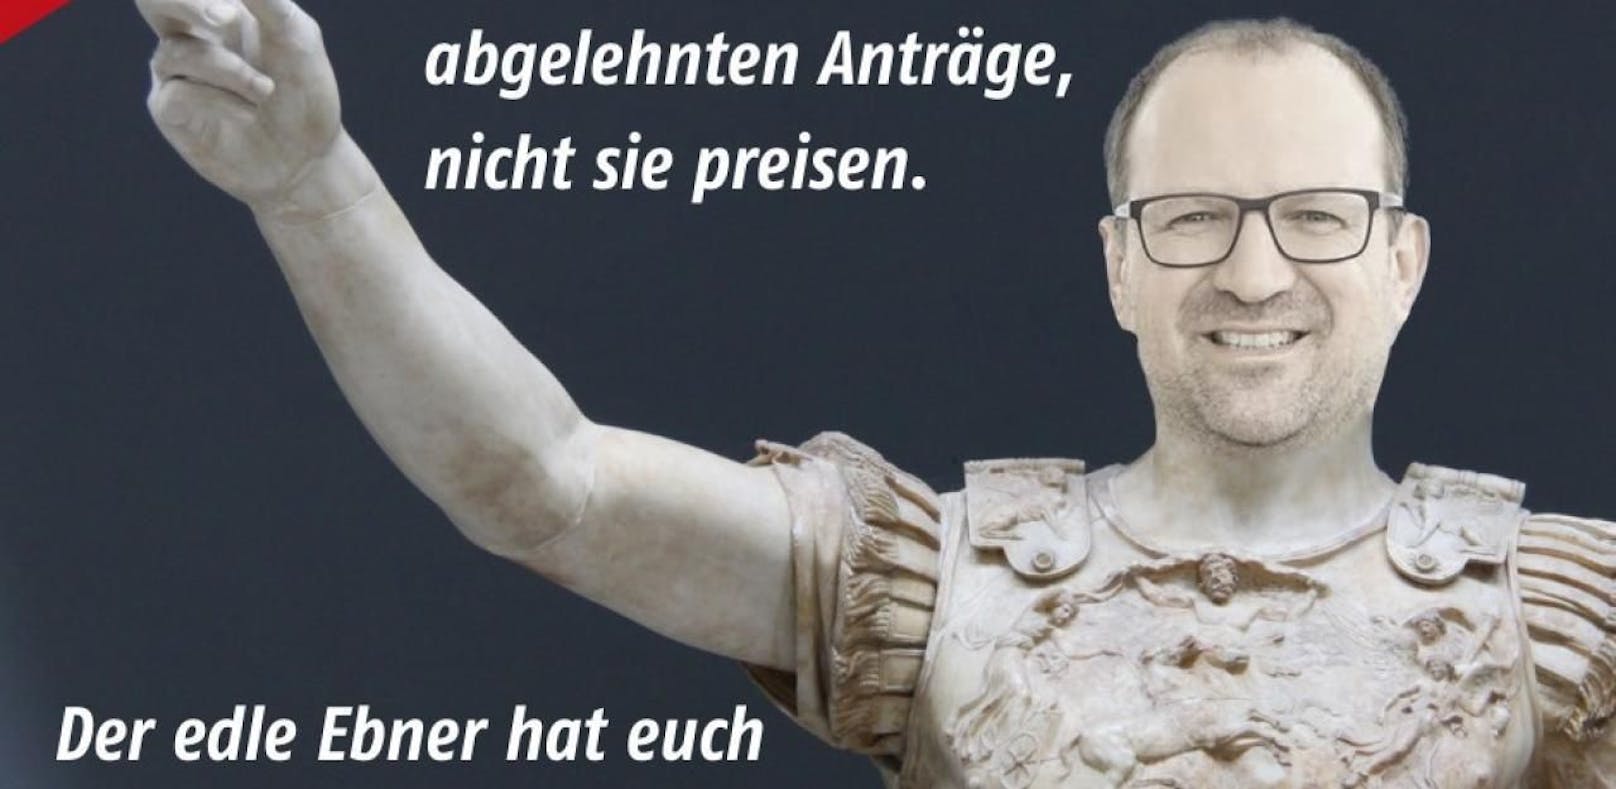 SPÖ-Parodie im Shakespeare-Gewand zeigt Bernhard Ebner (VP) in römischer Rüstung.